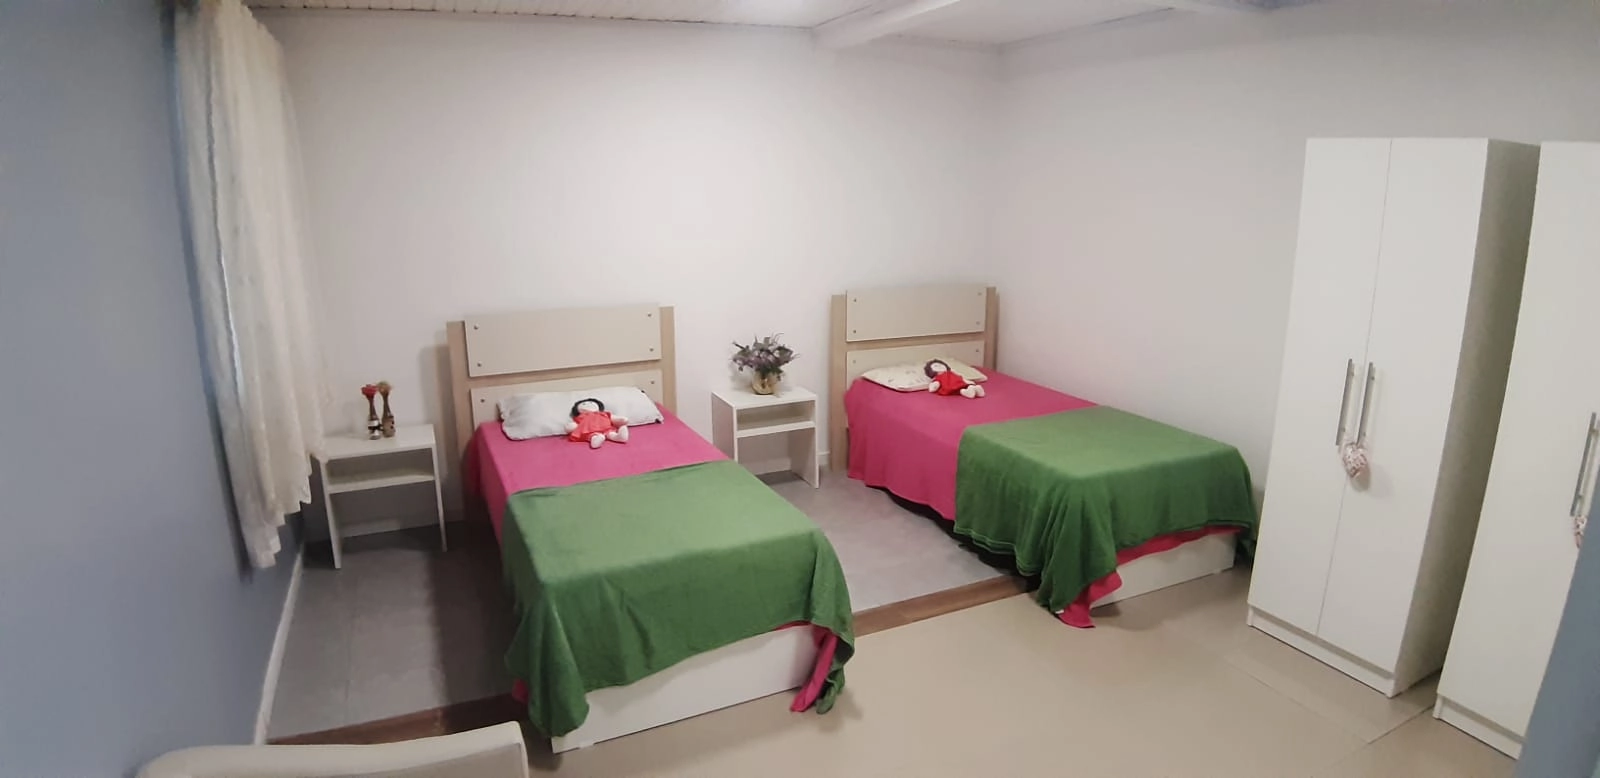 Imagem De Destaque - Residencial Casa Da Vó Jura: Um Novo Espaço Em Colombo Para Quem Procura Um Lar Confortável E Seguro Na Melhor Idade